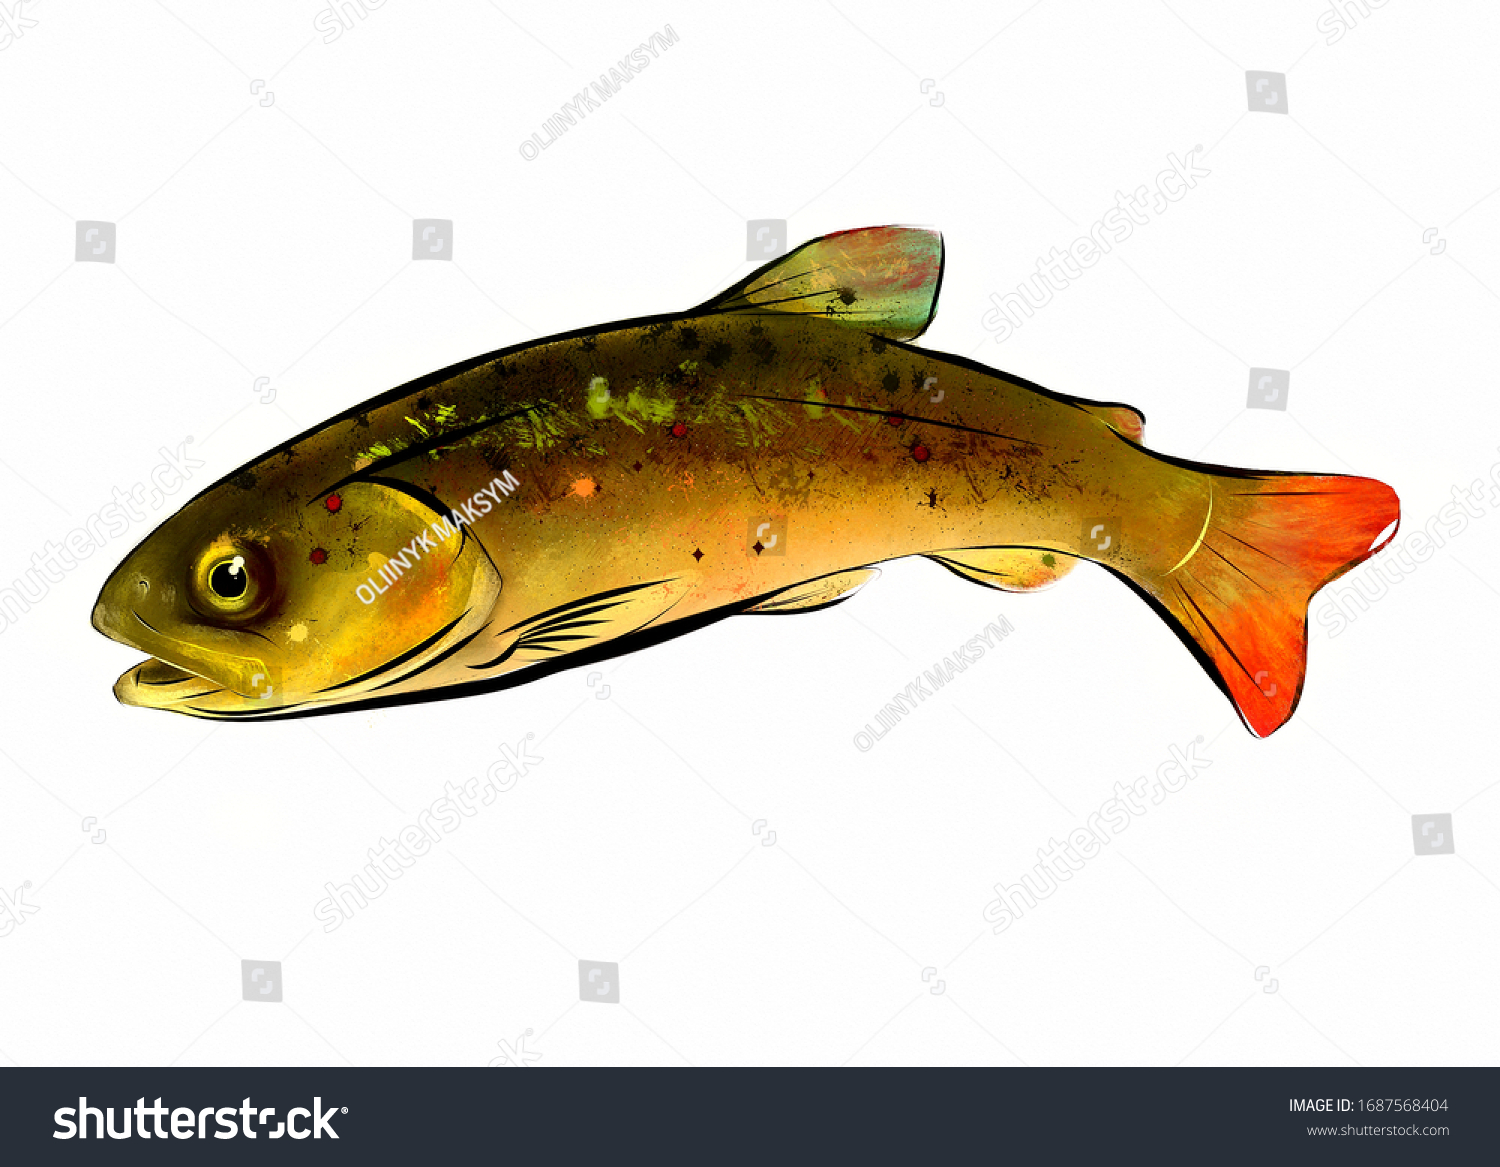 マス 魚 デジタル絵画 動物 緑の魚 カラーイラスト アート 自然 食べ物 のイラスト素材